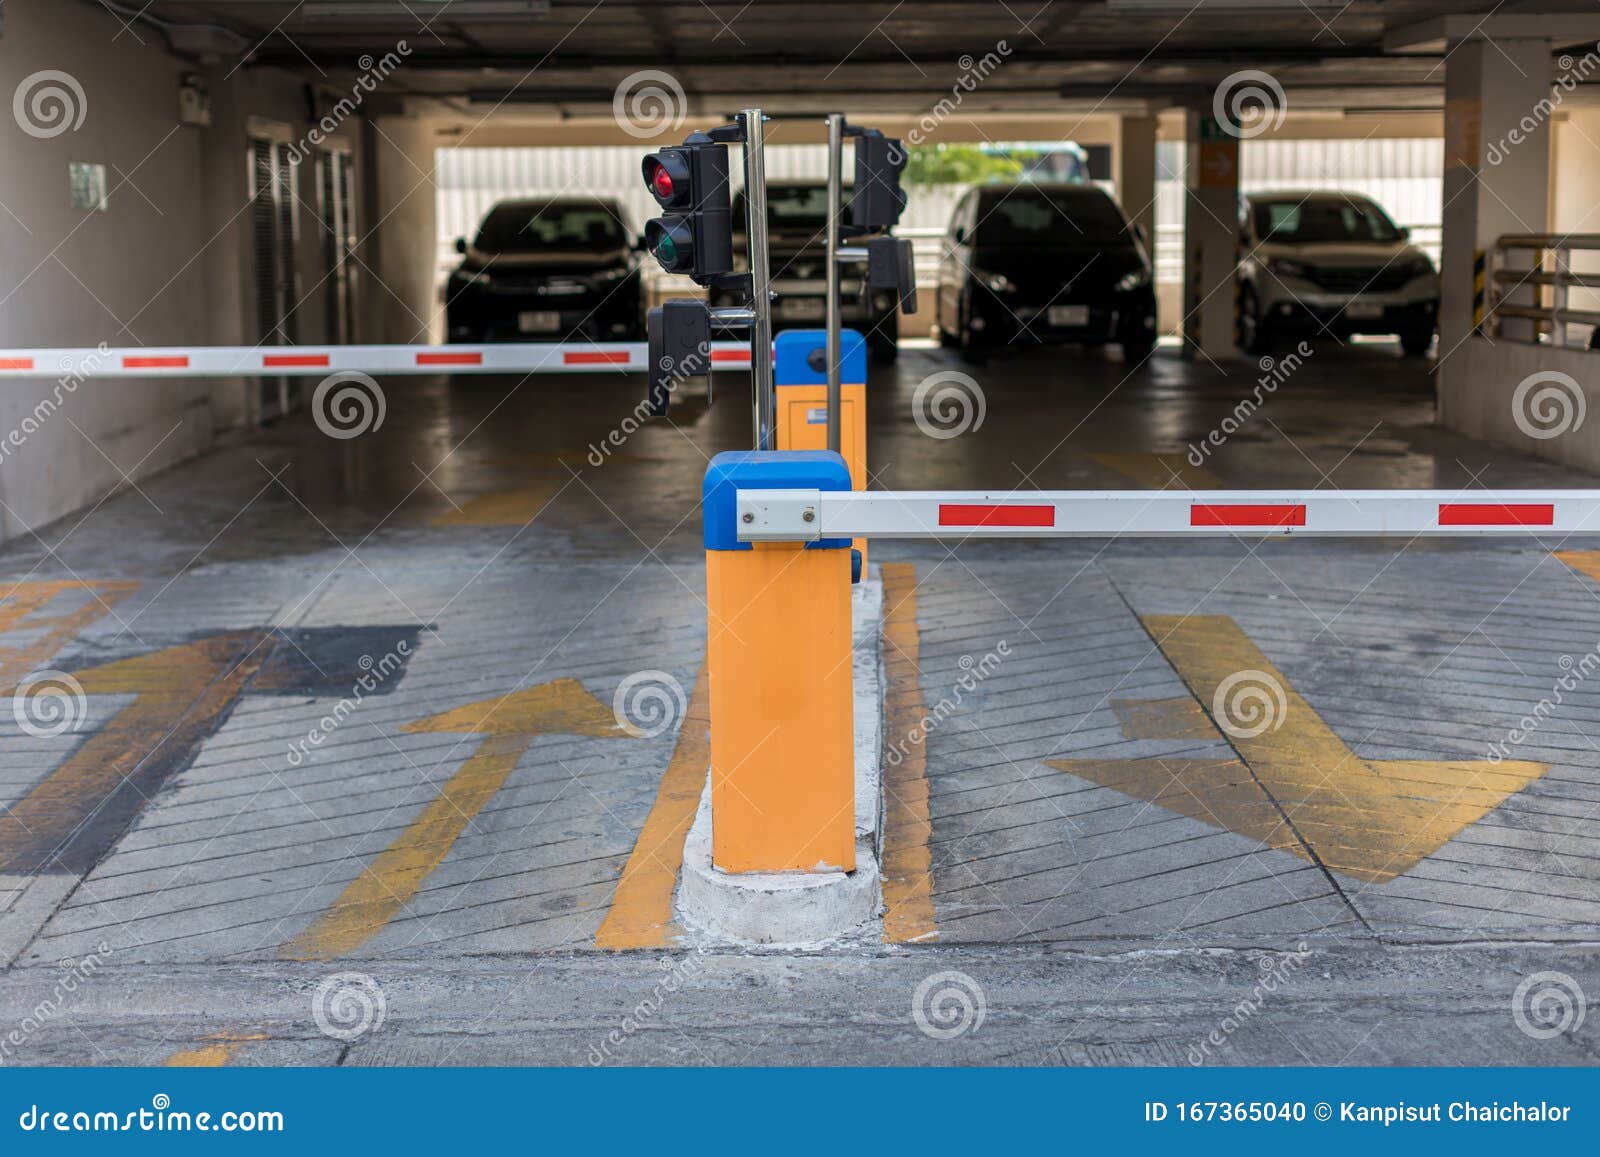 Barrera automática para parking y control de acceso